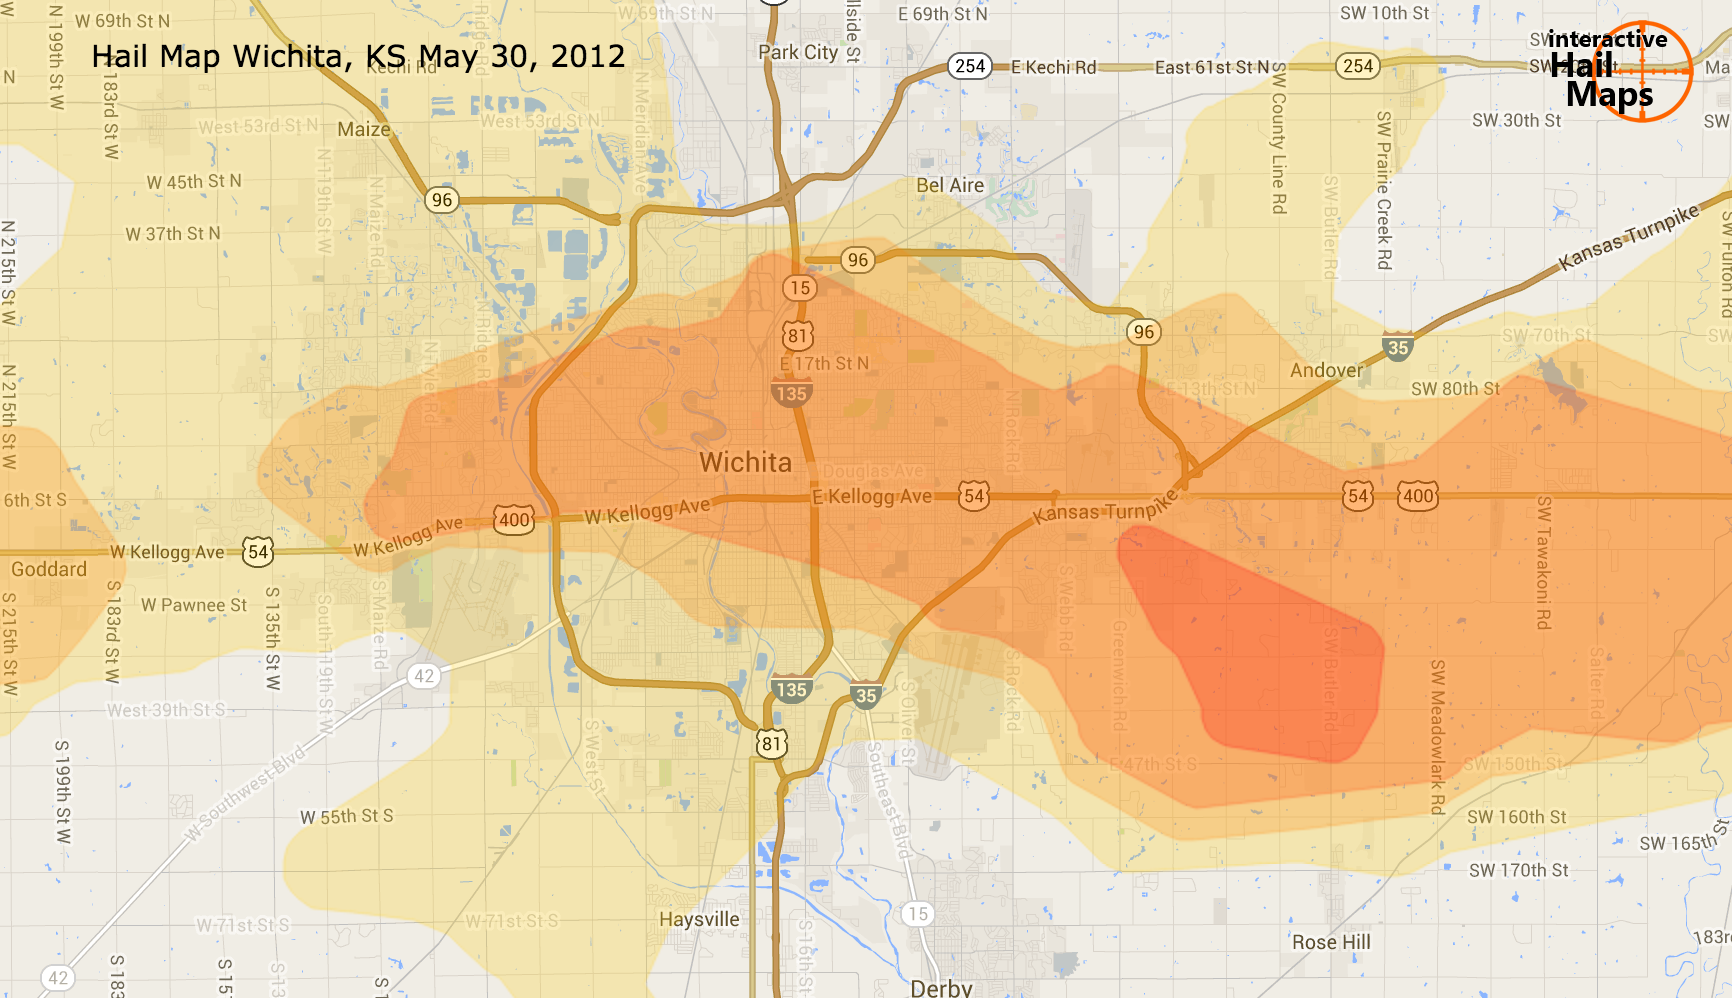 Map Of Wichita Kansas Hail Storm May 30th 2012 Interactive Hail Maps